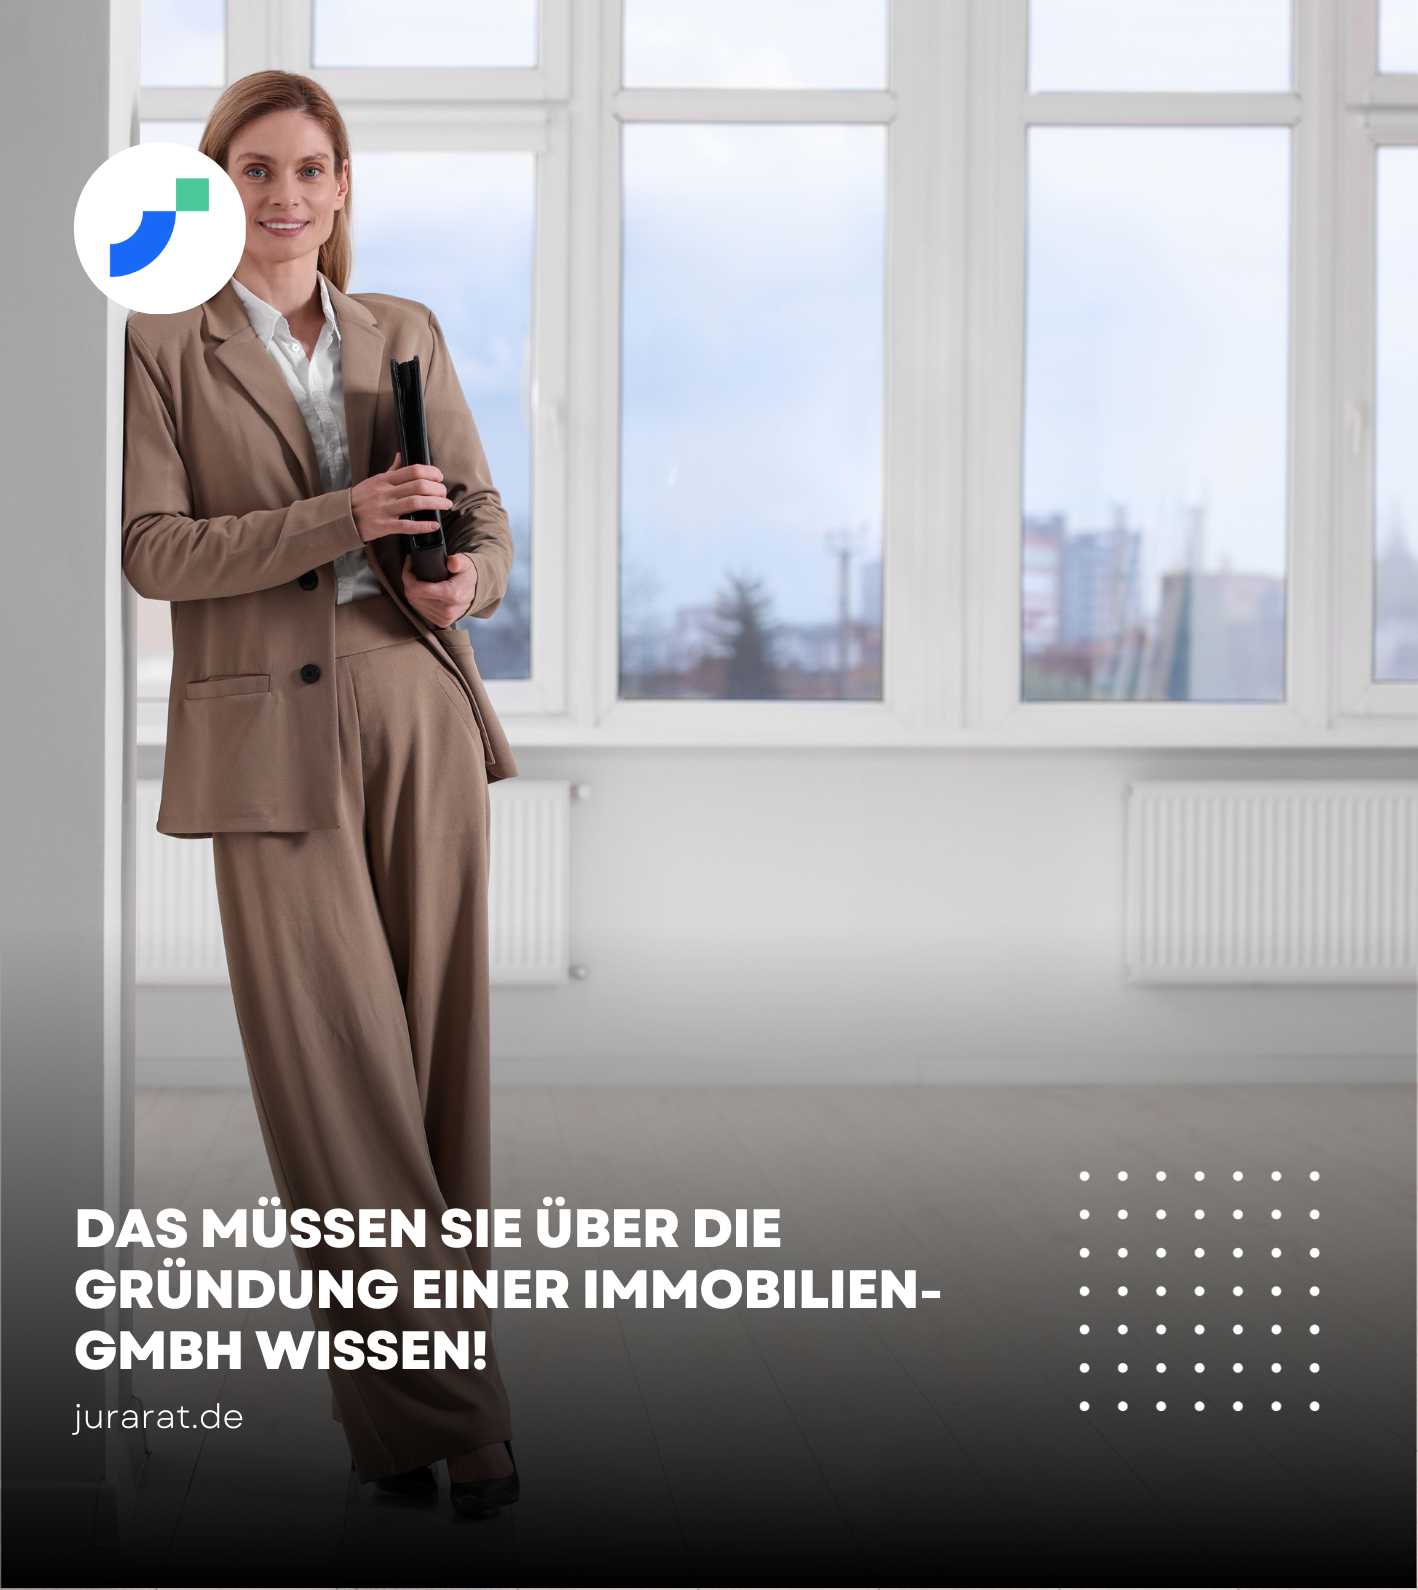 Die Immobilien GmbH ist eine Form der Spardosen GmbH / vermögensverwaltende GmbH und verhilft durch diverse Steuervorteile die Besteuerung der Einnahmen.